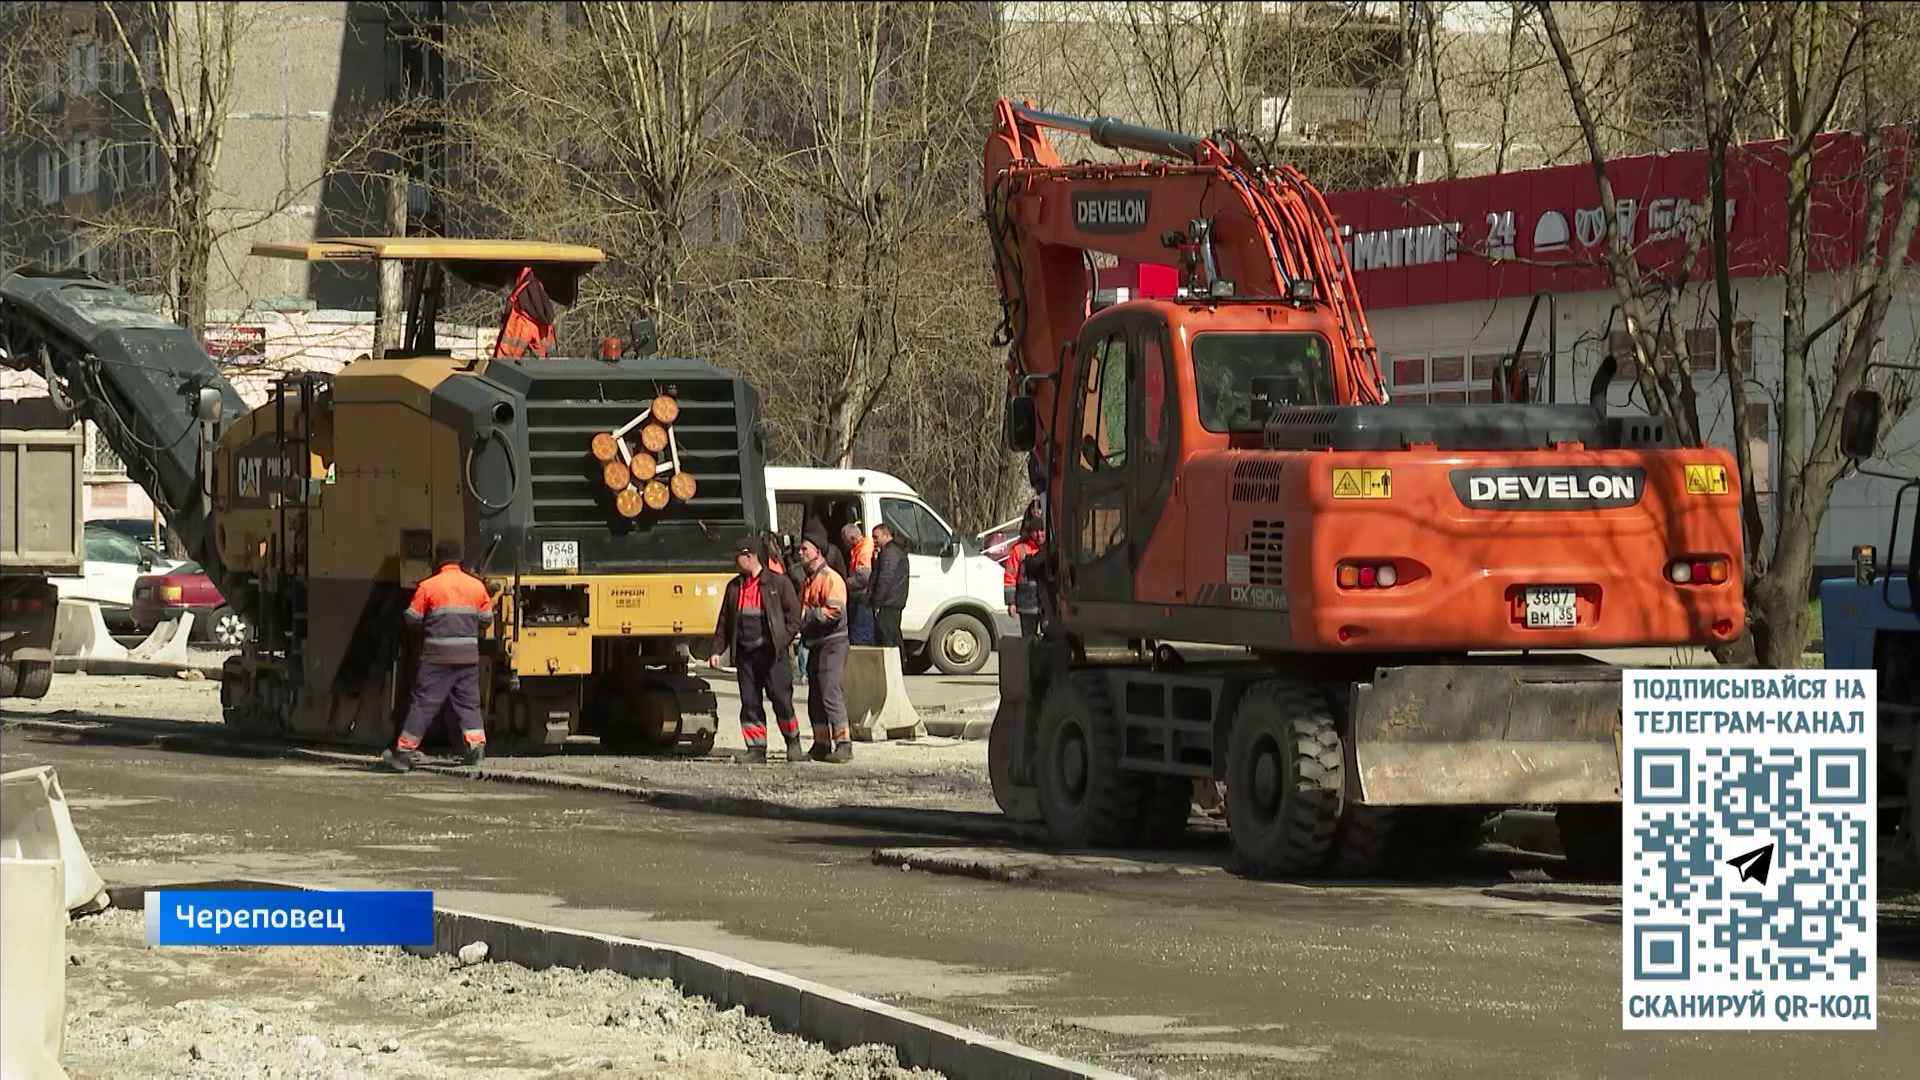 Эксперты оценивают качество первой в этом году отремонтированной улицы в Череповце